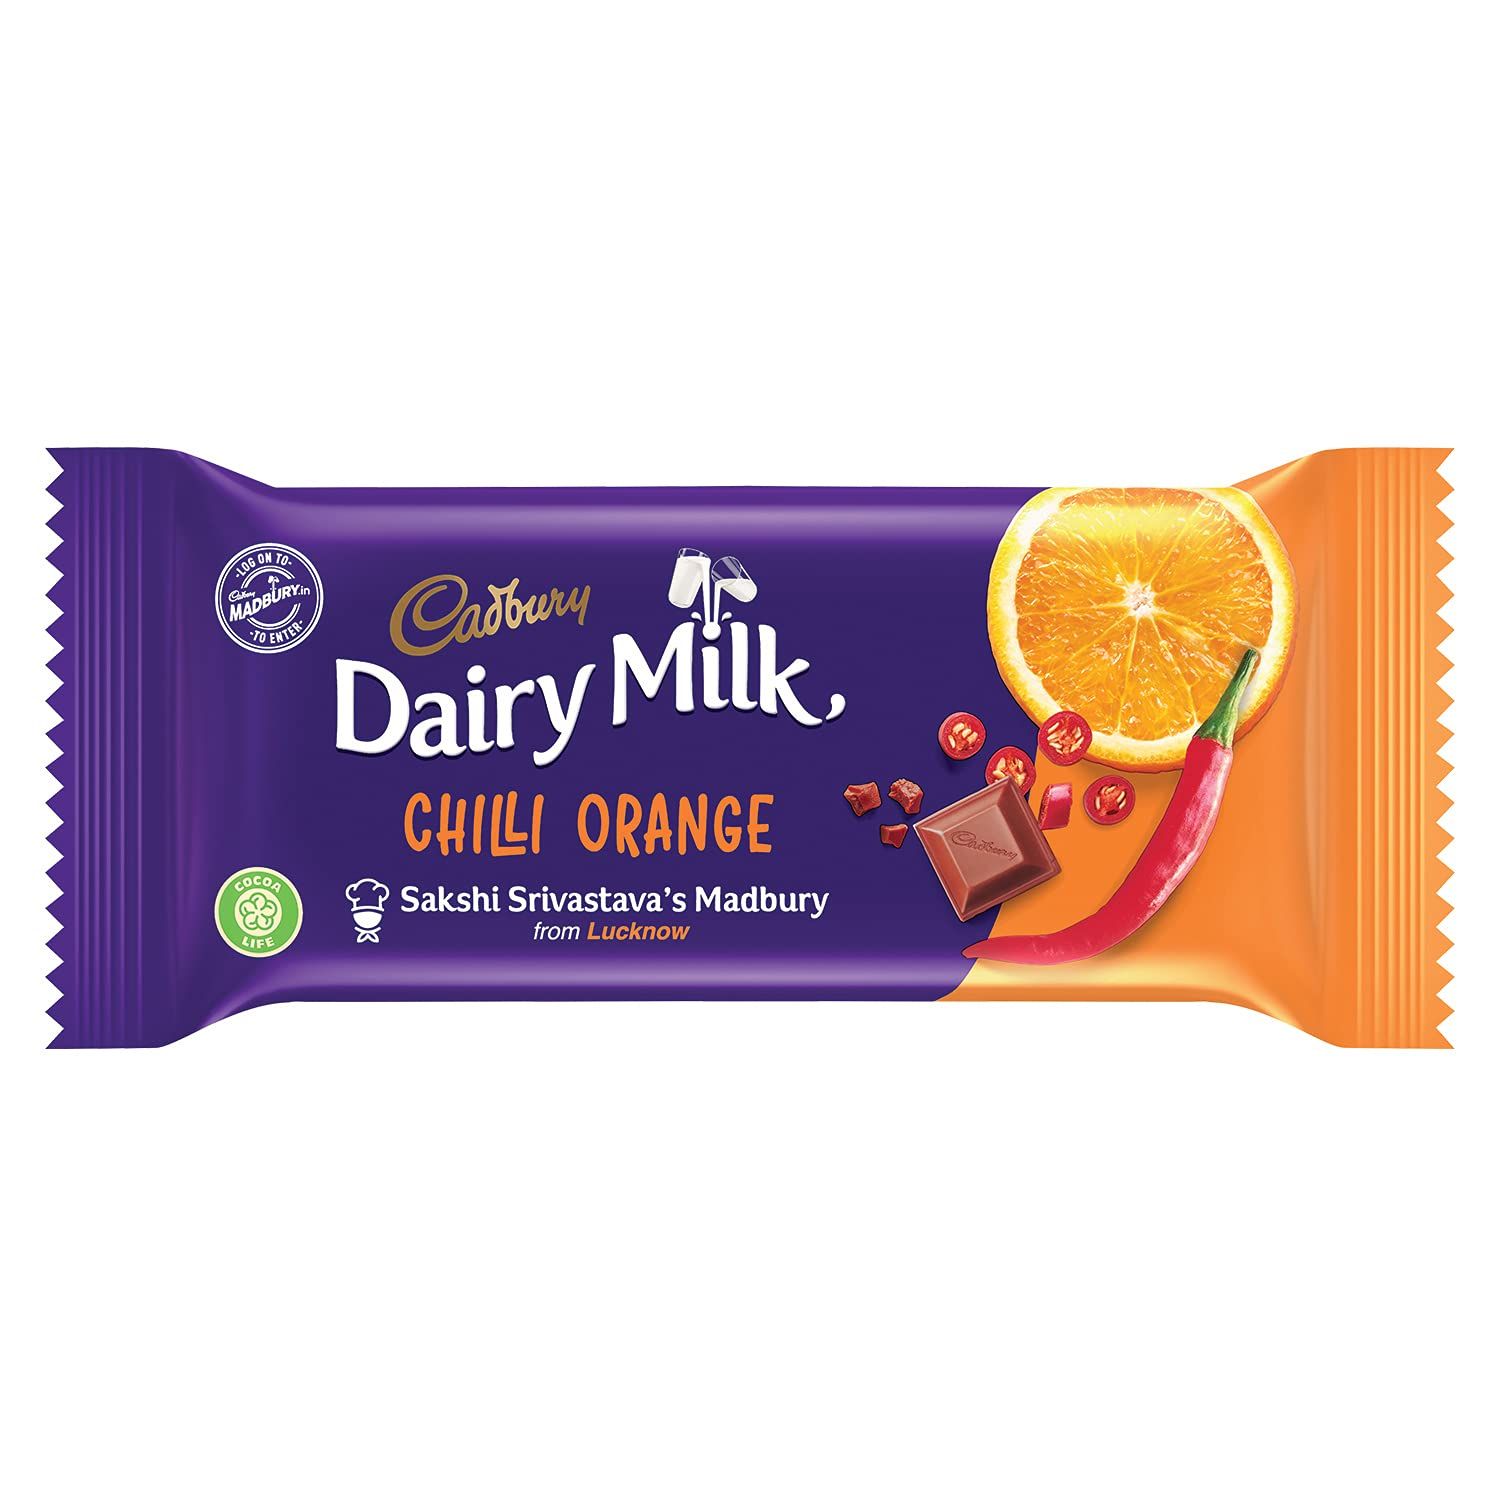 Cadbury Dairy Milk Madbury Chilli Orange Chocolate Bar Image